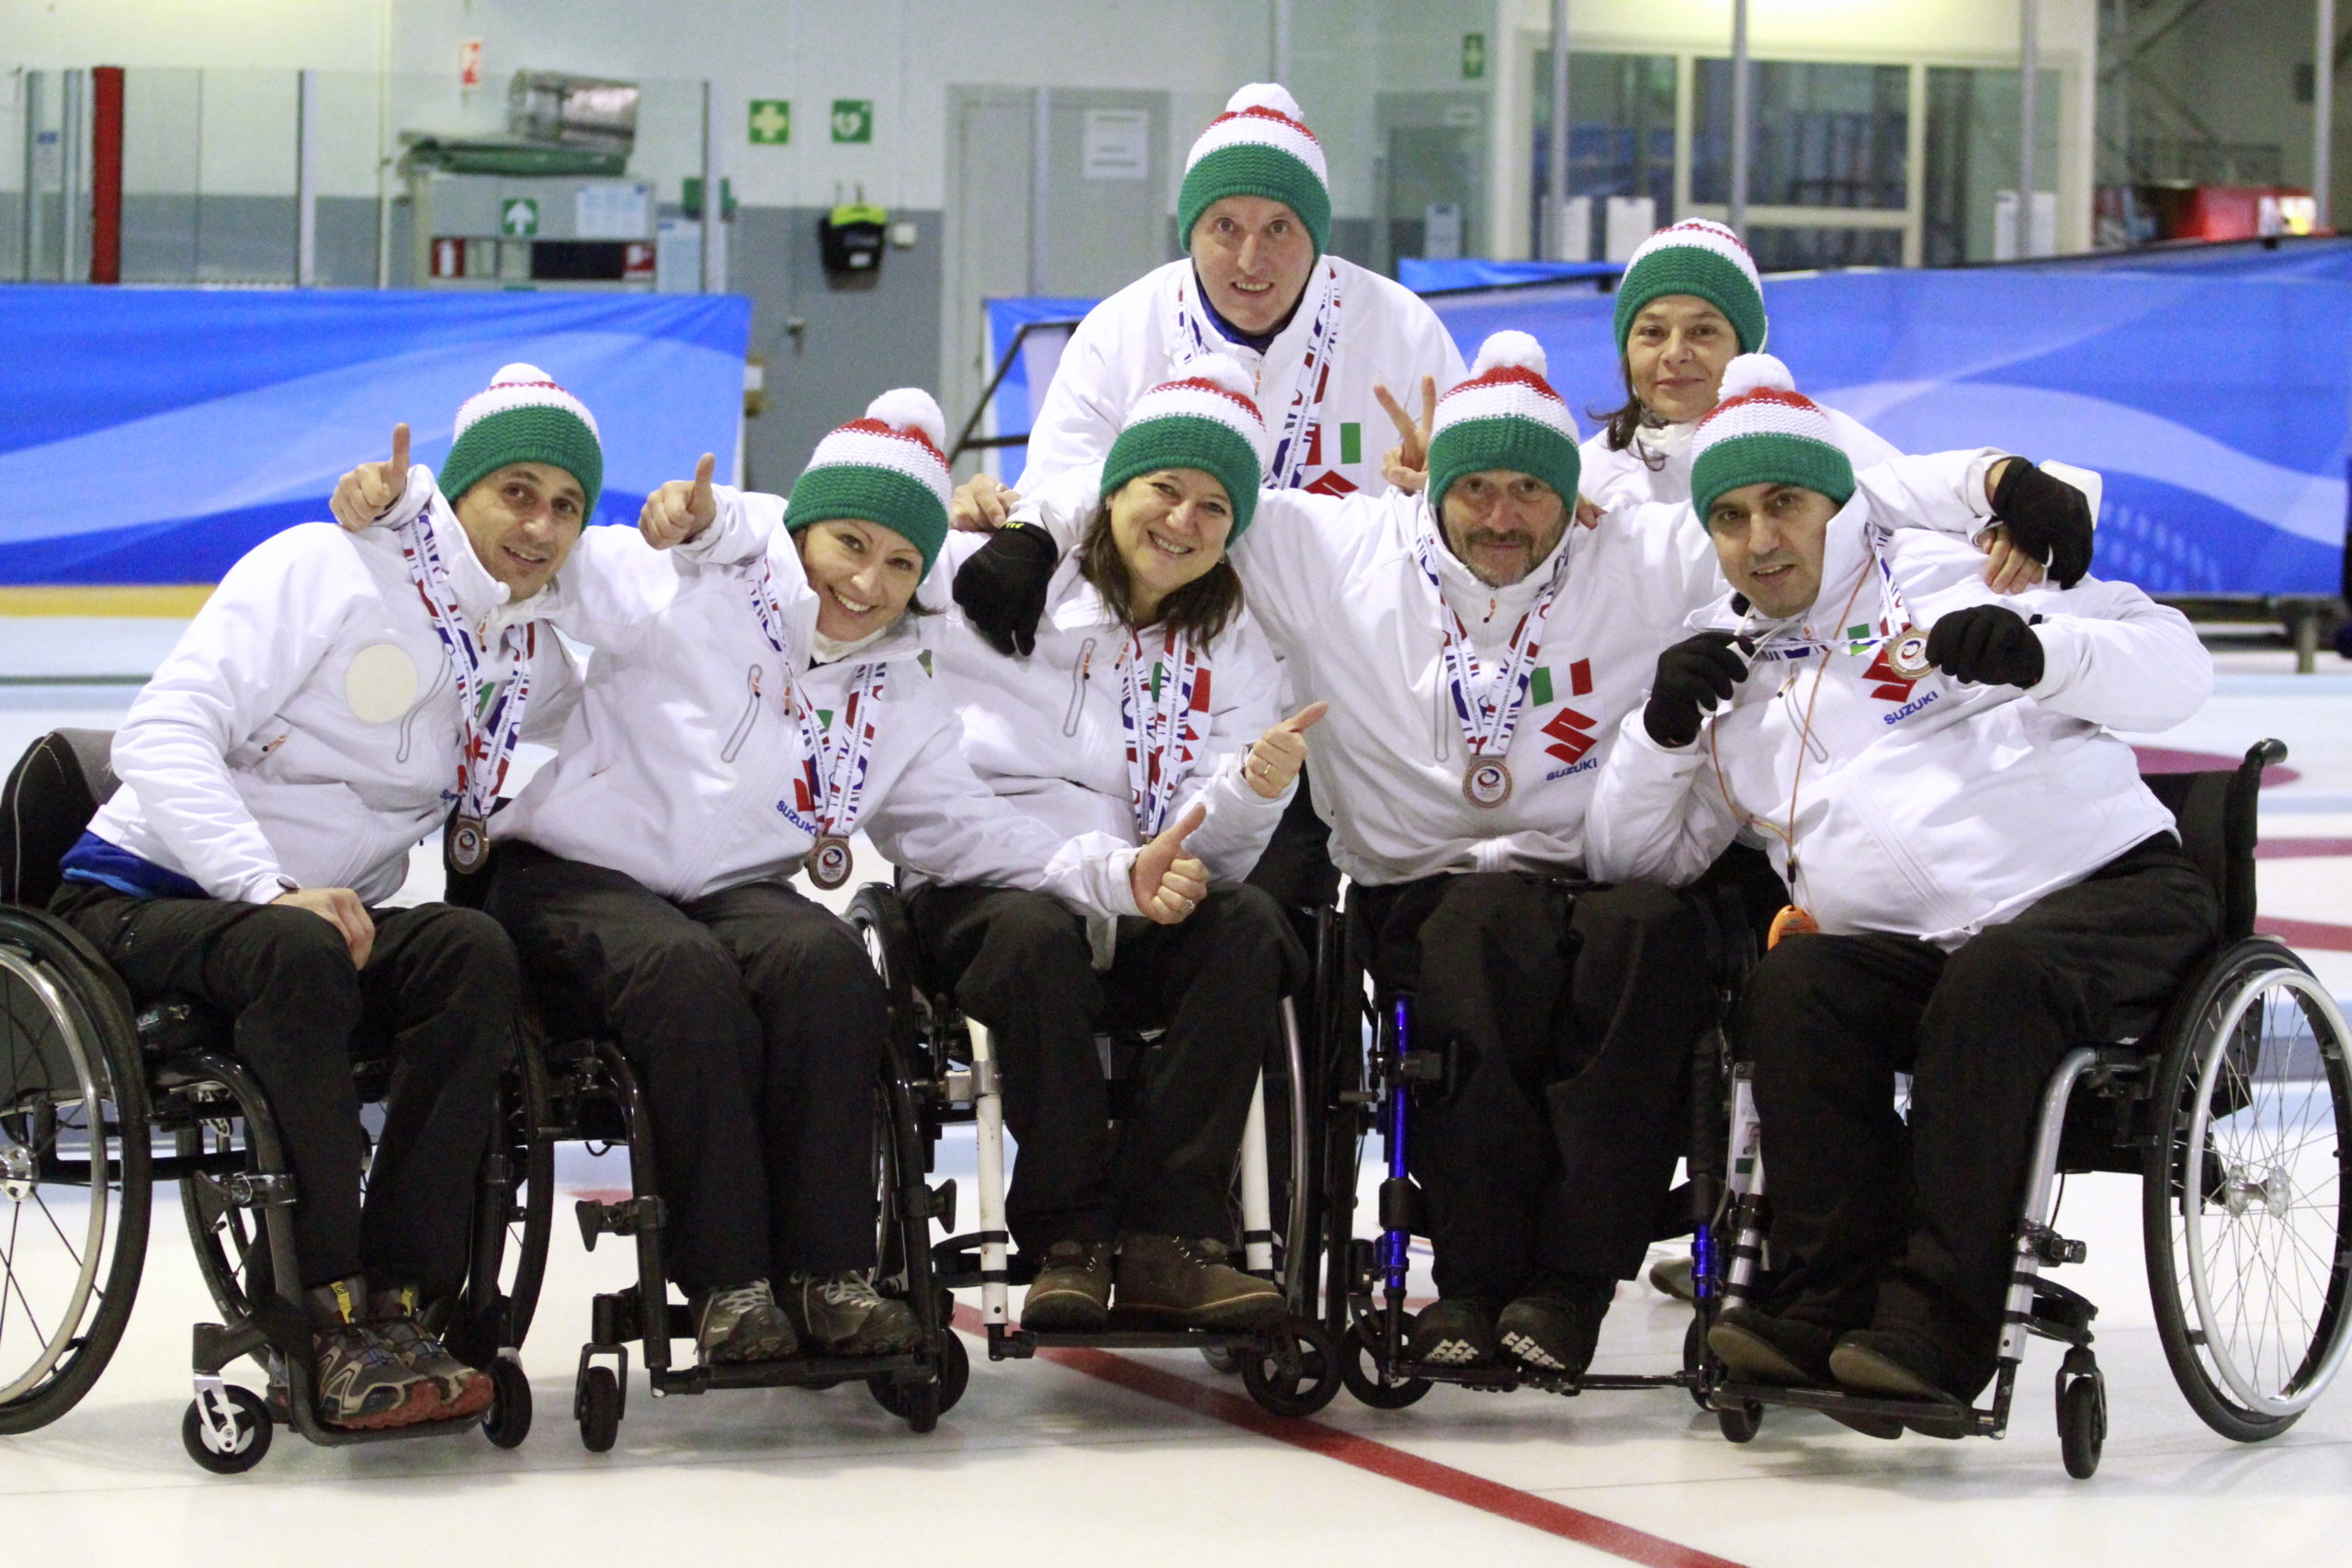 Wheelchair curling: bronzo per Marchese e Bich al Campionato mondiale di serie B